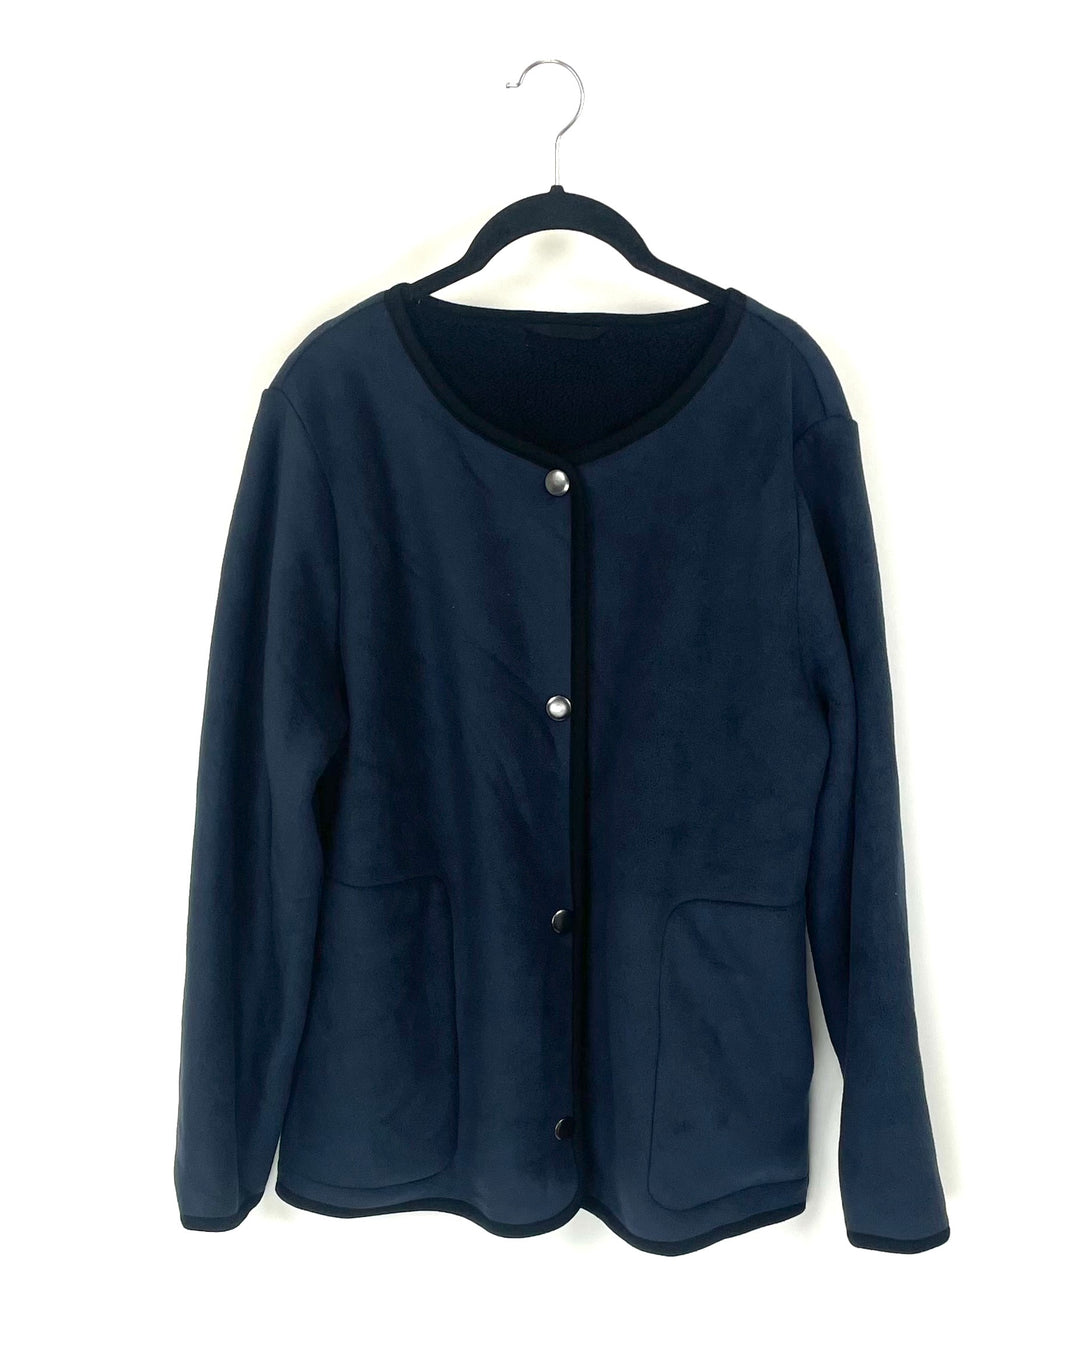 Dark Blue Button Up Fleece Jacket - Size 6/8